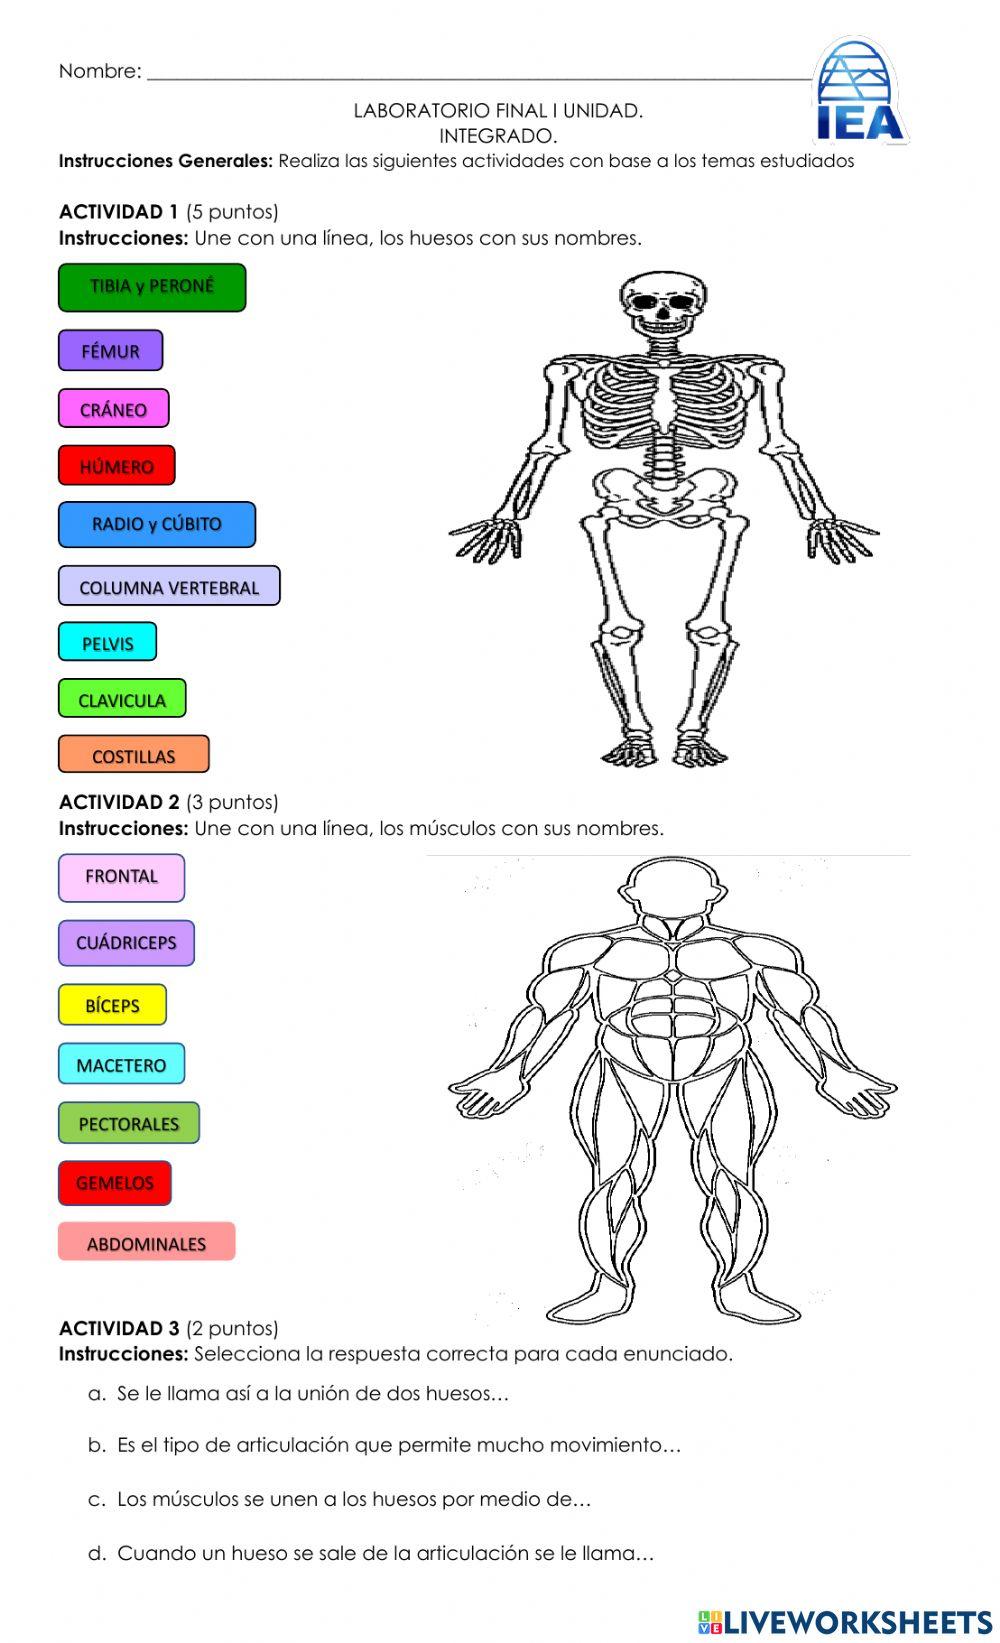 Sistemas oseo, muscular y locomotor